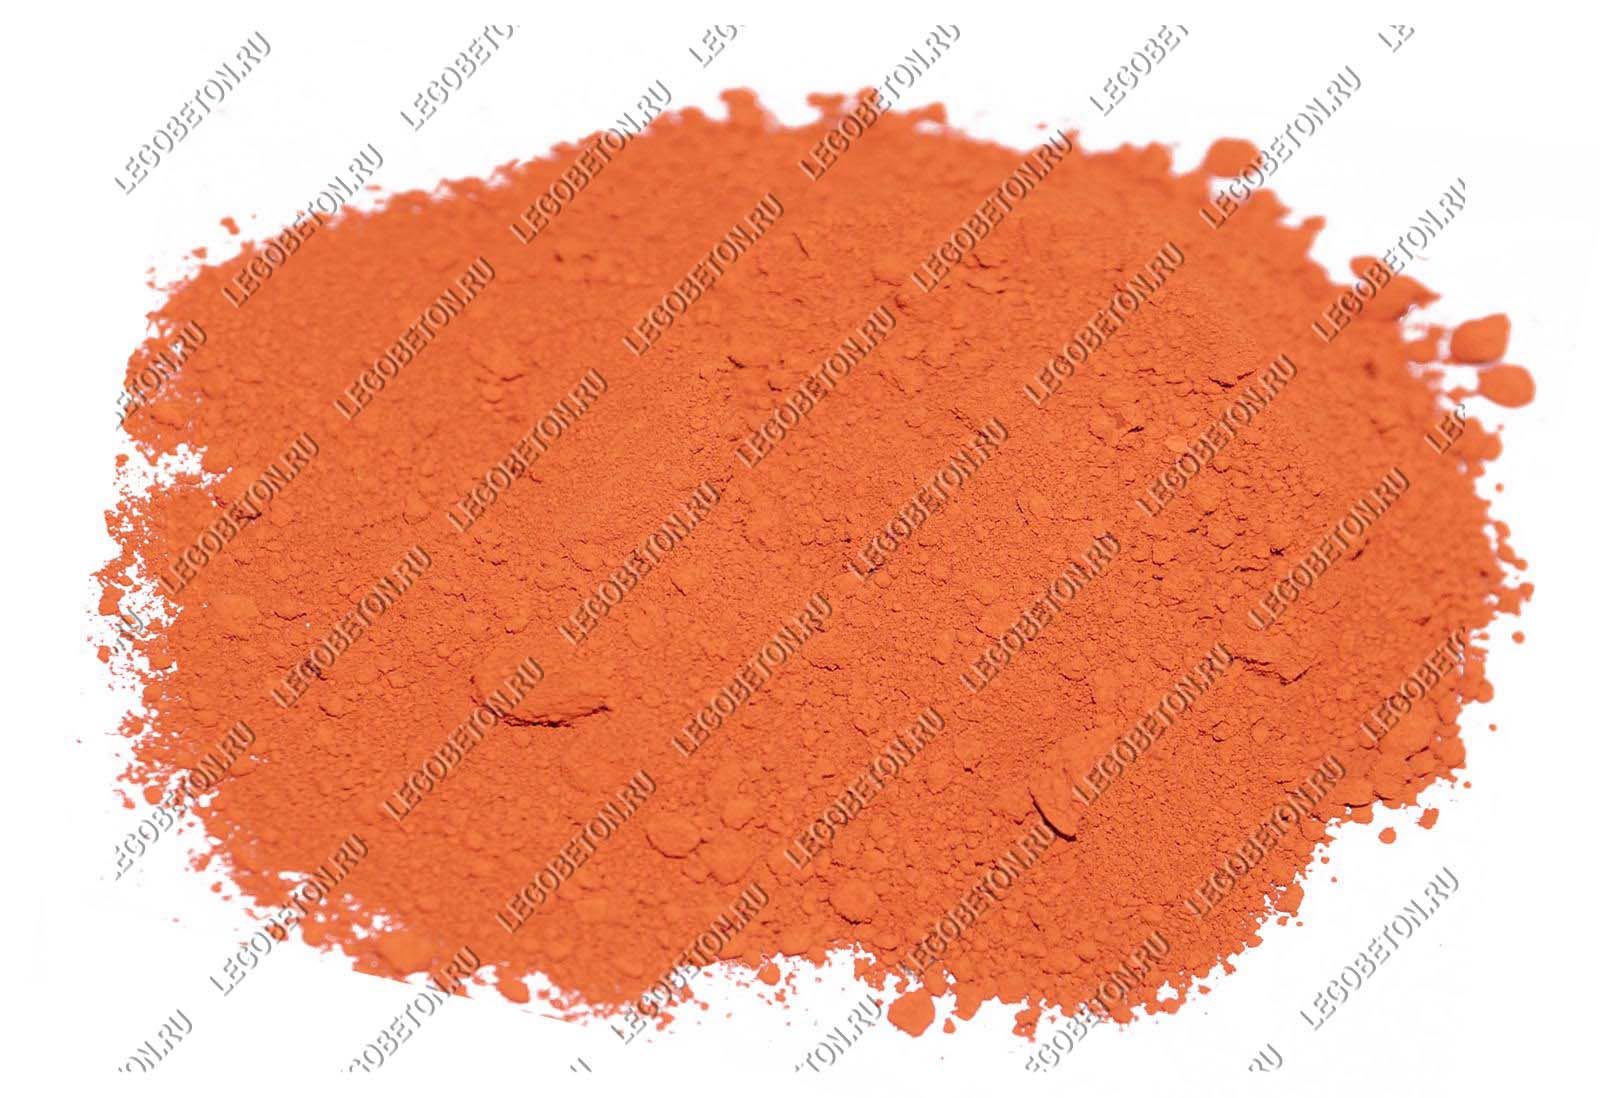 пигмент оранжевый 960 купить , оранжевый пигмент для тротуарной плитки купить , оранжевый пигмент для бетона купить , оранжевый краситель для бетона 960, оранжевый пигмент для плитки в москве ,краситель для штукатурки оранжевый 960 ,железоокисный пигмент оранжевый купить в москве